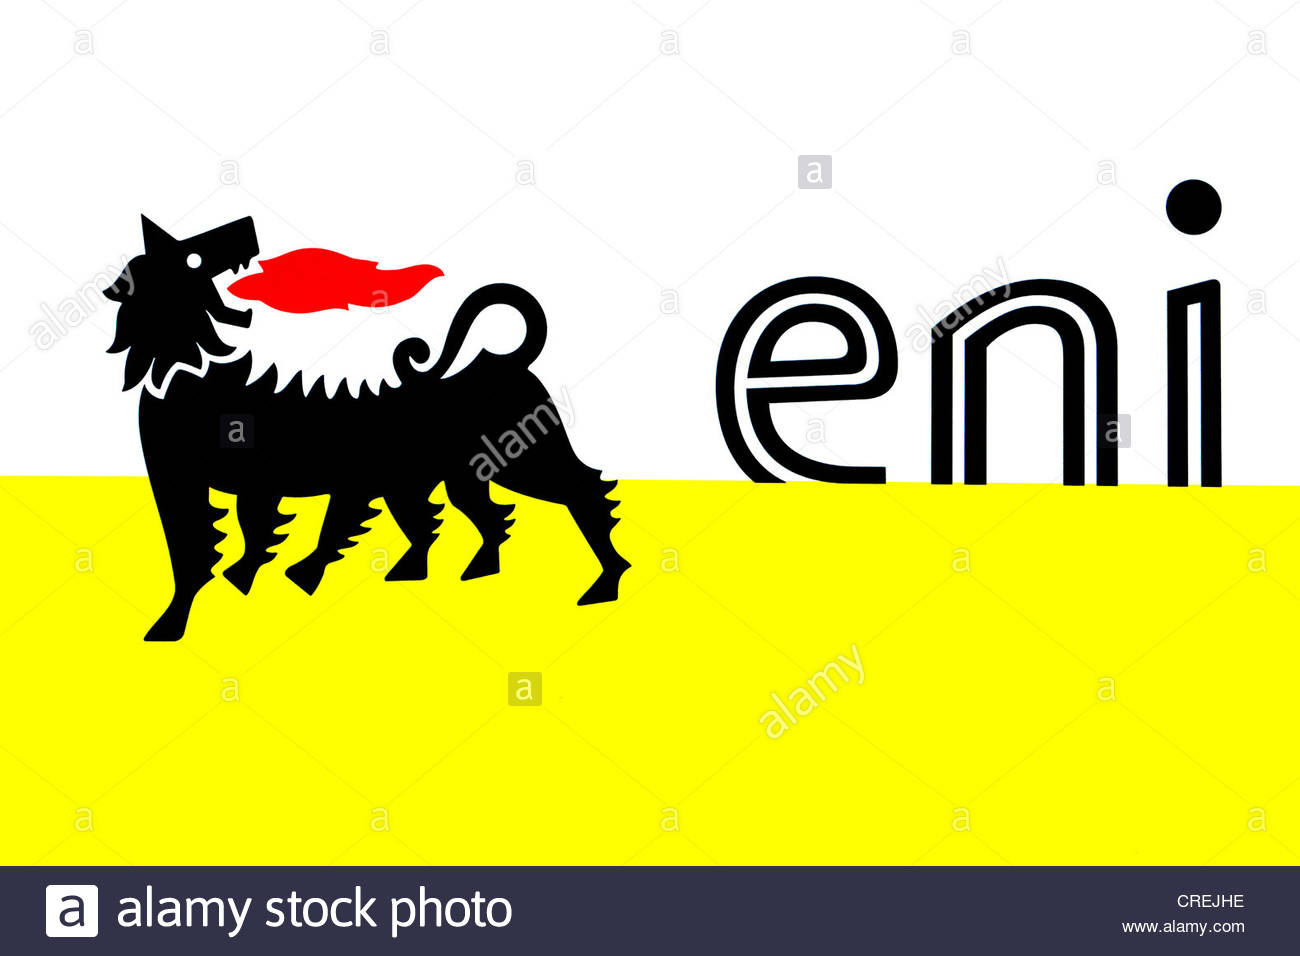 Il logo dell'Eni: il cane a sei zampe